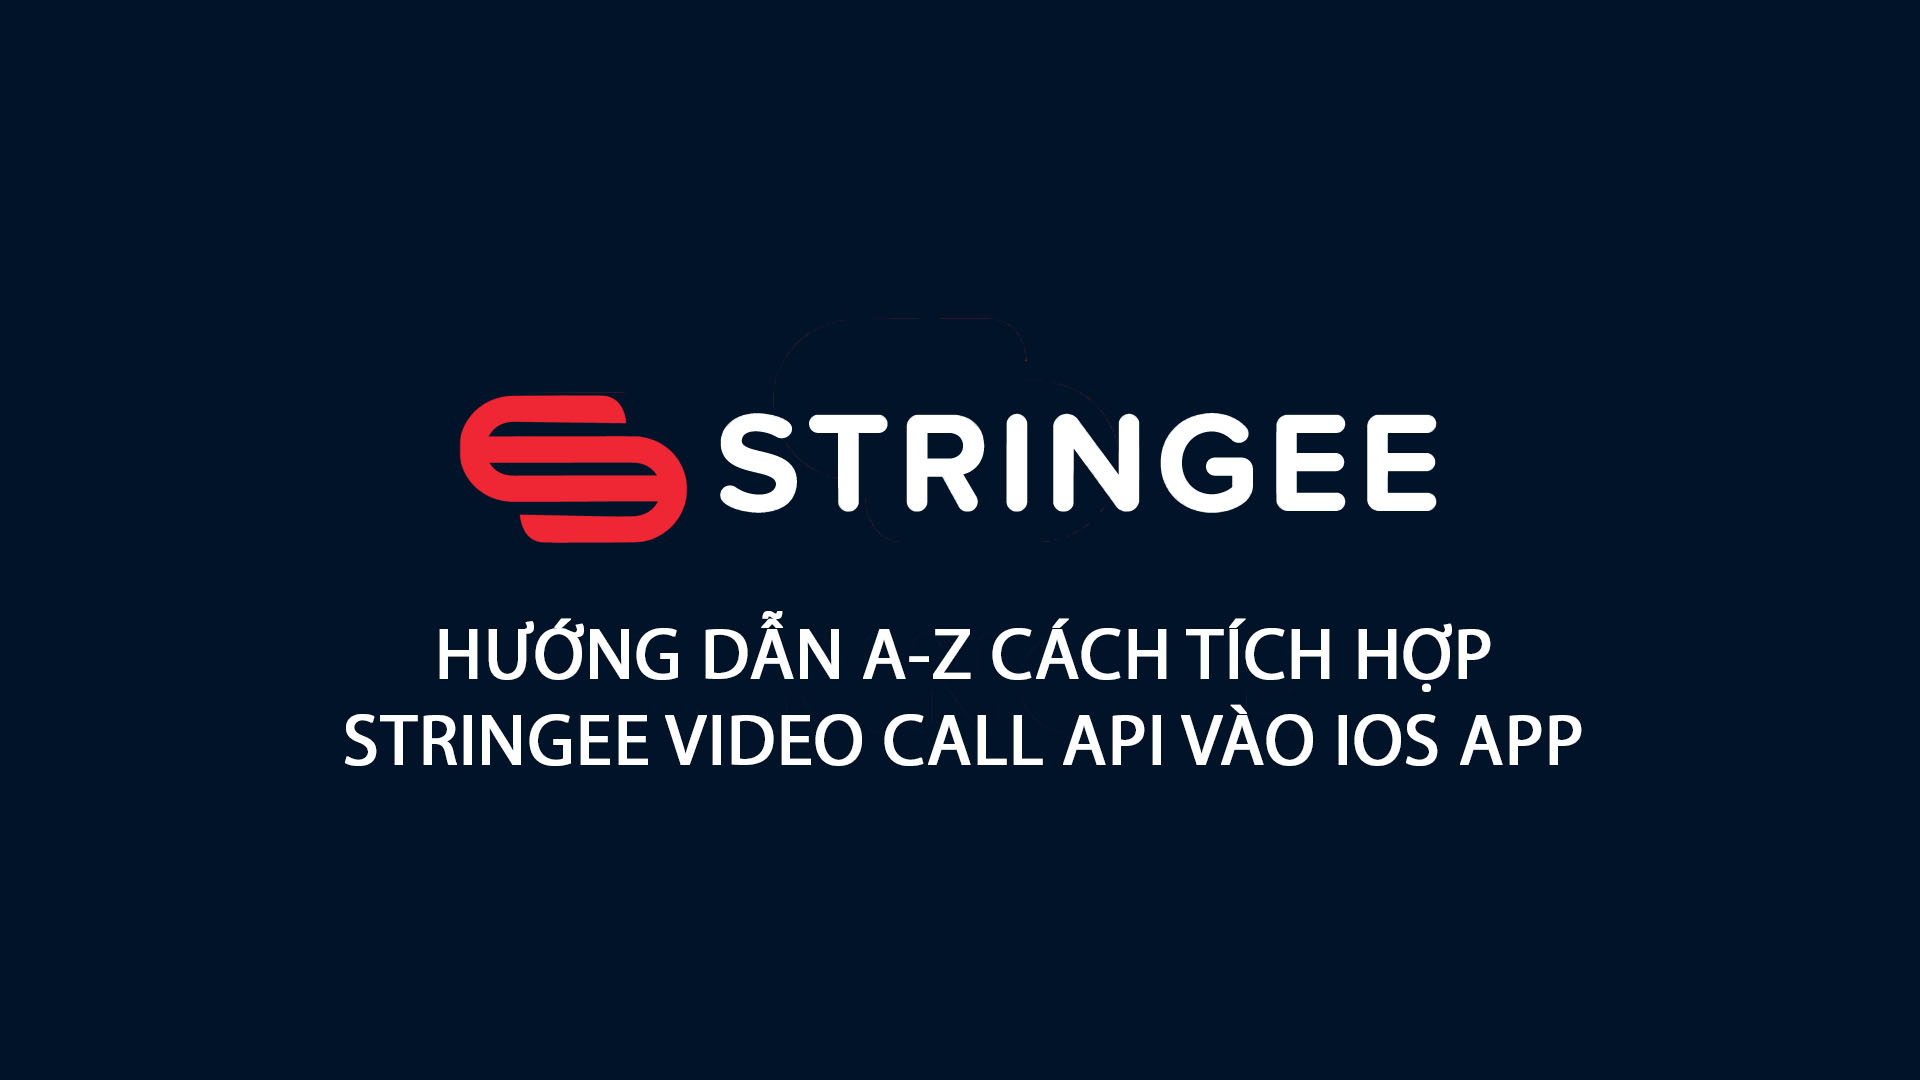 Hướng dẫn tích hợp Stringee Video Call vào IOS APP